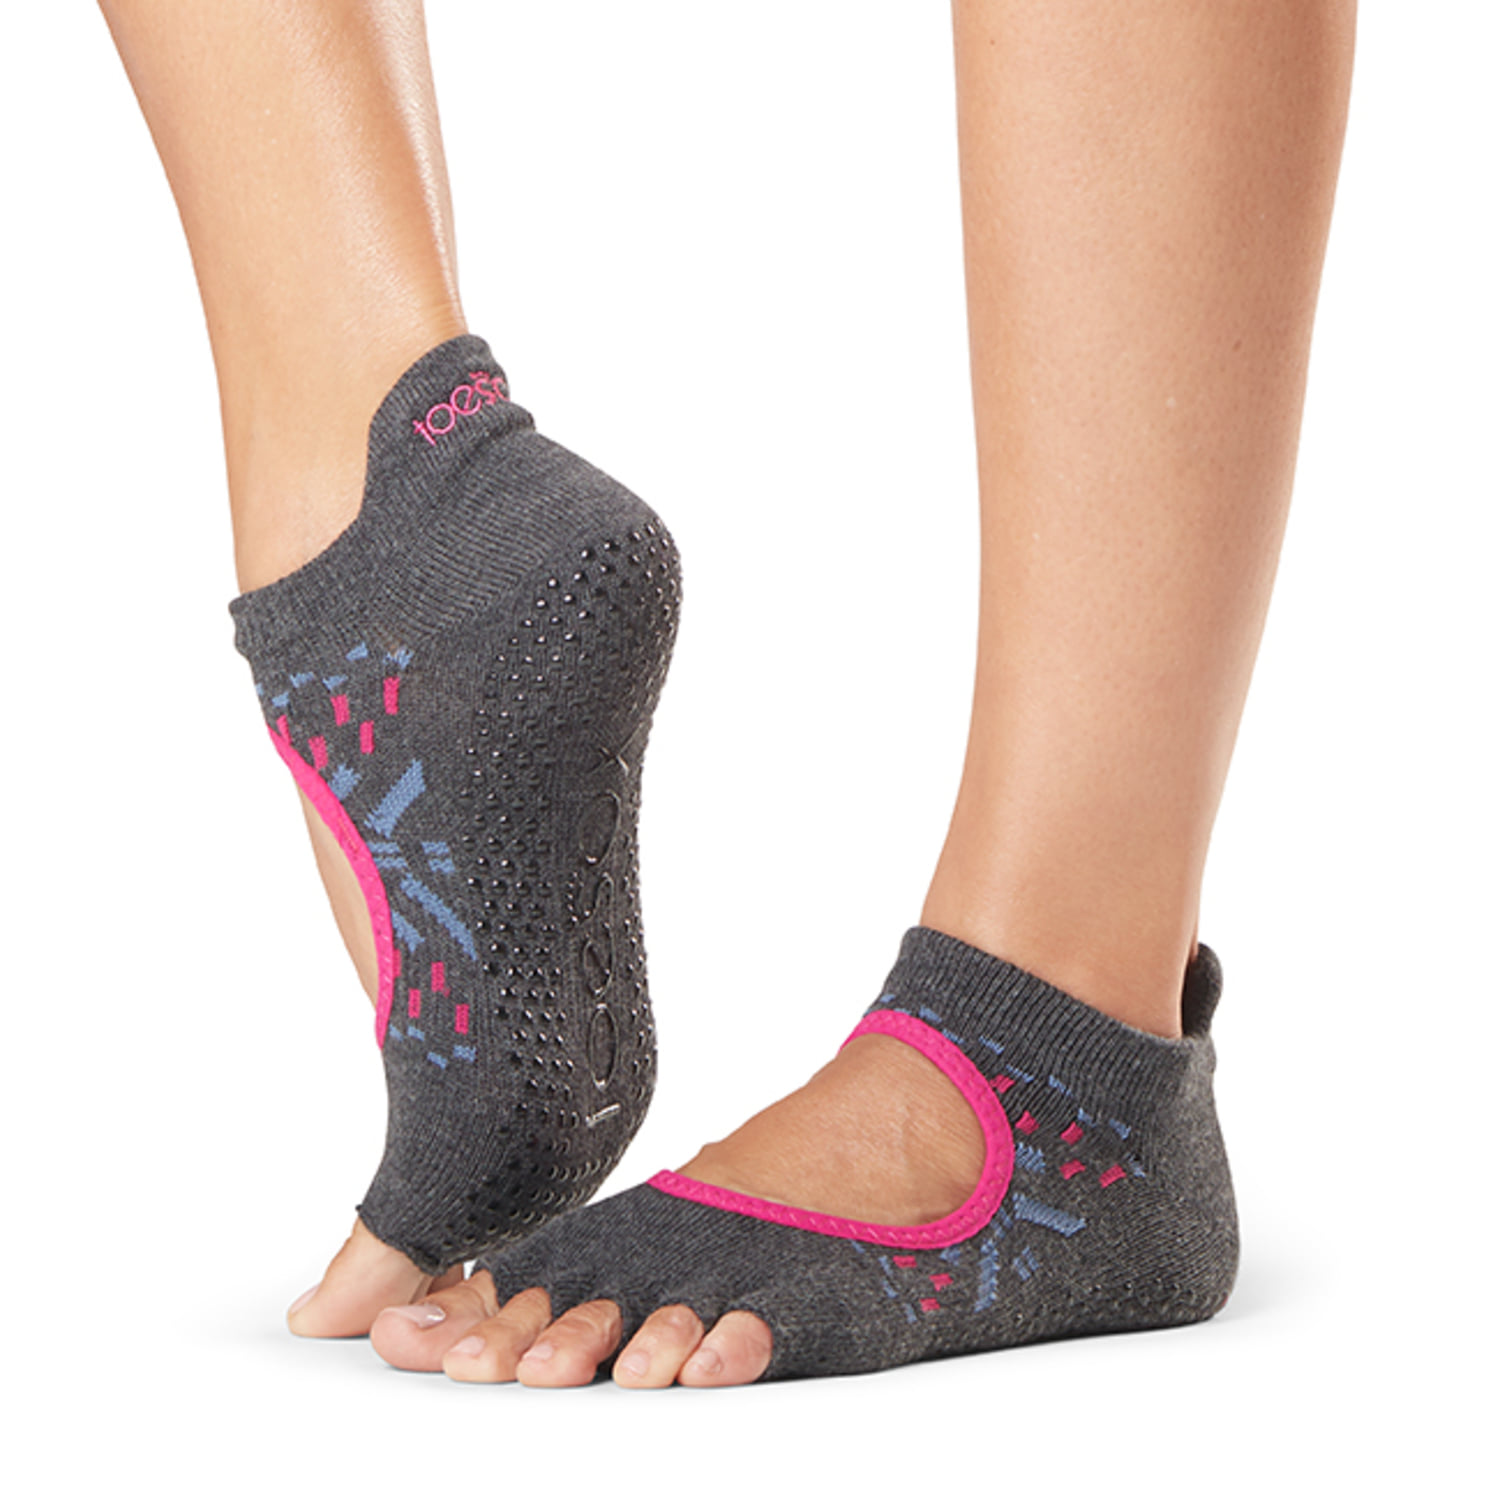 토삭스 코리아 공식쇼핑몰입니다. ToeSox | Five Toe Socks and Sandals